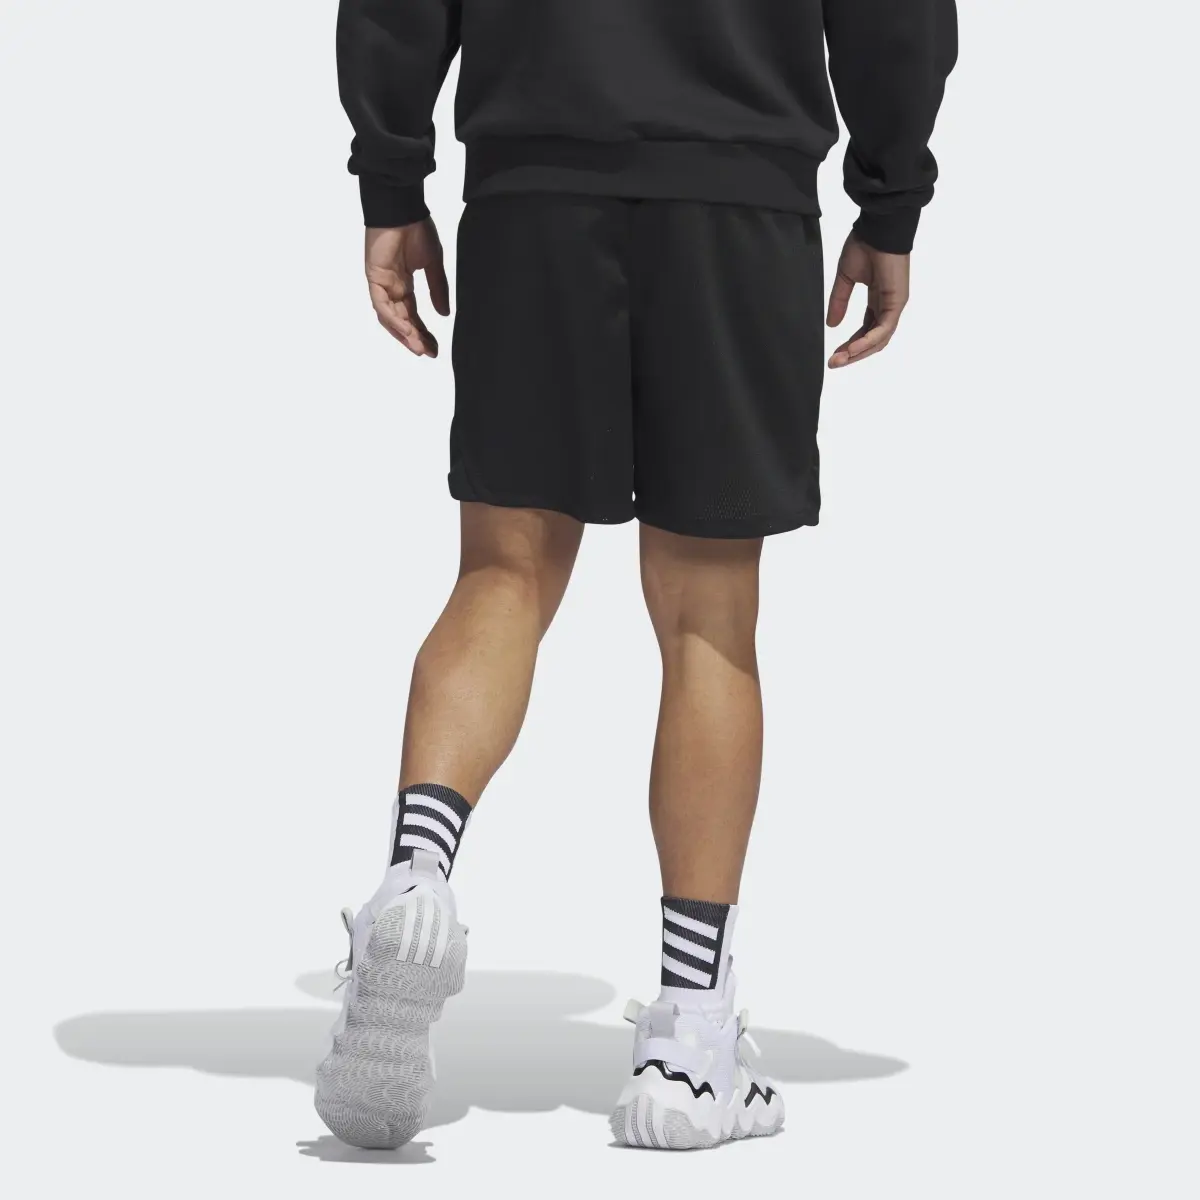 Adidas D.O.N. Select Shorts. 3